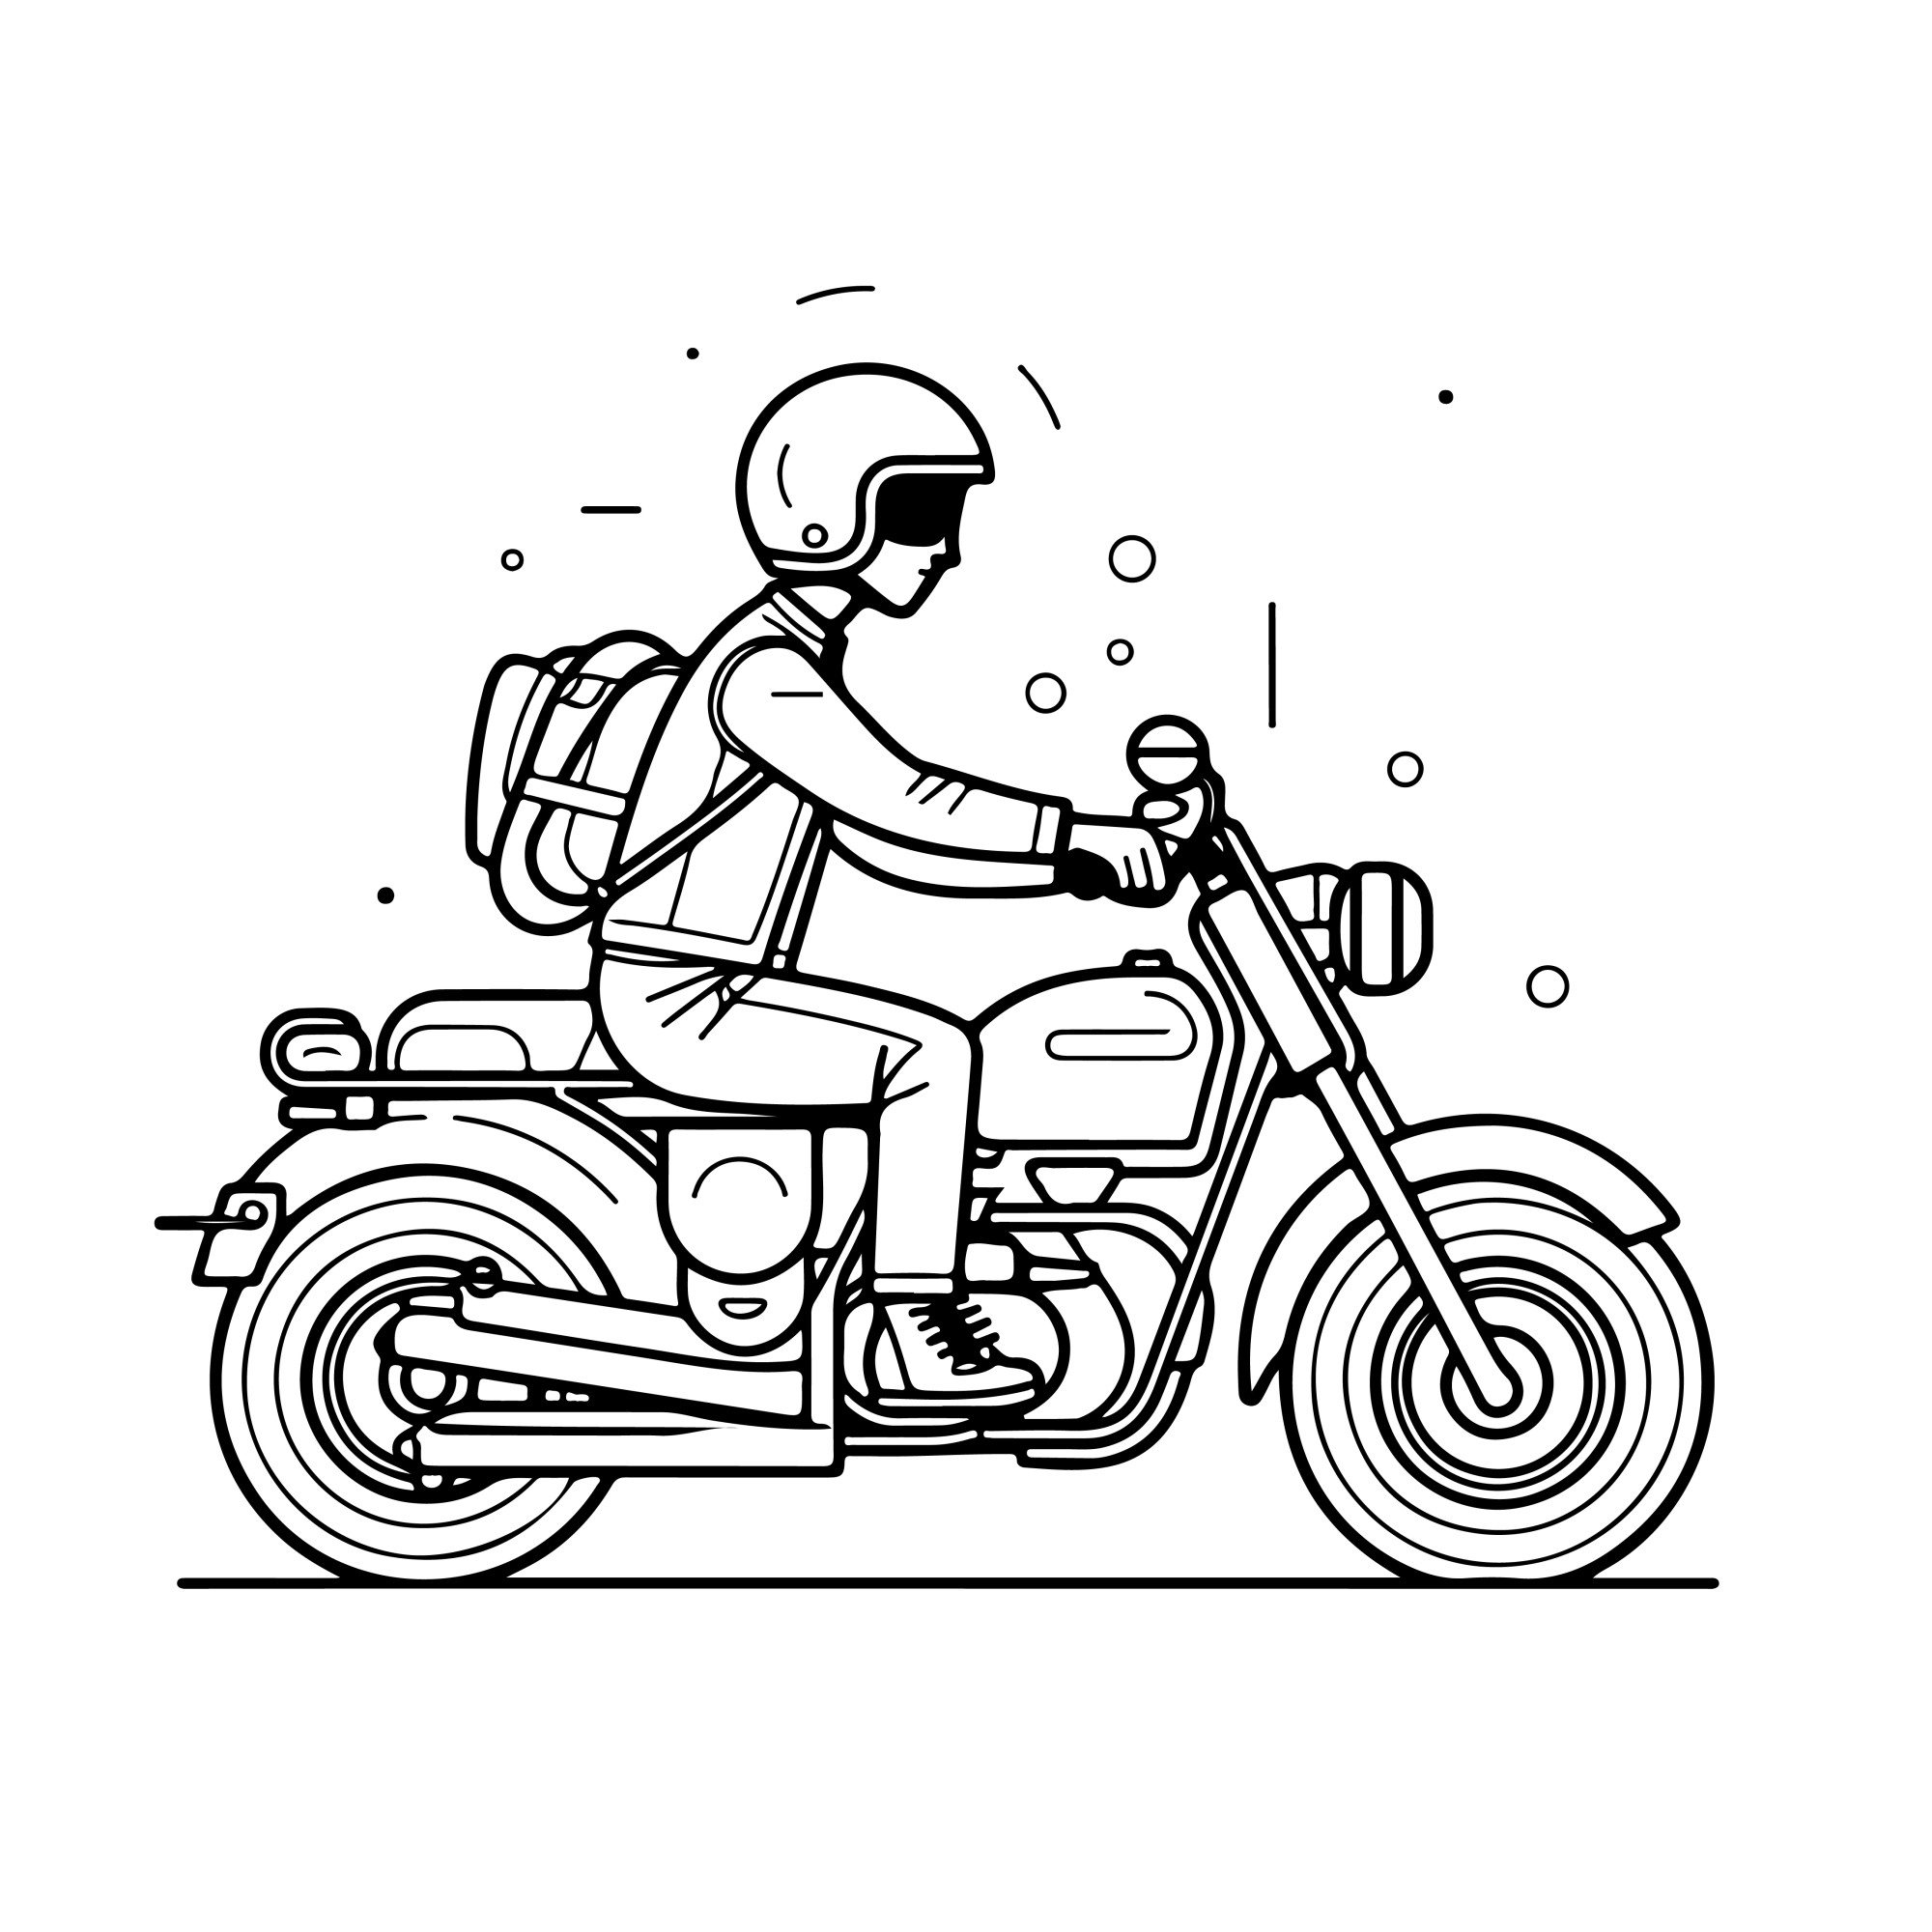 Раскраска для детей: путешественник на мотоцикле